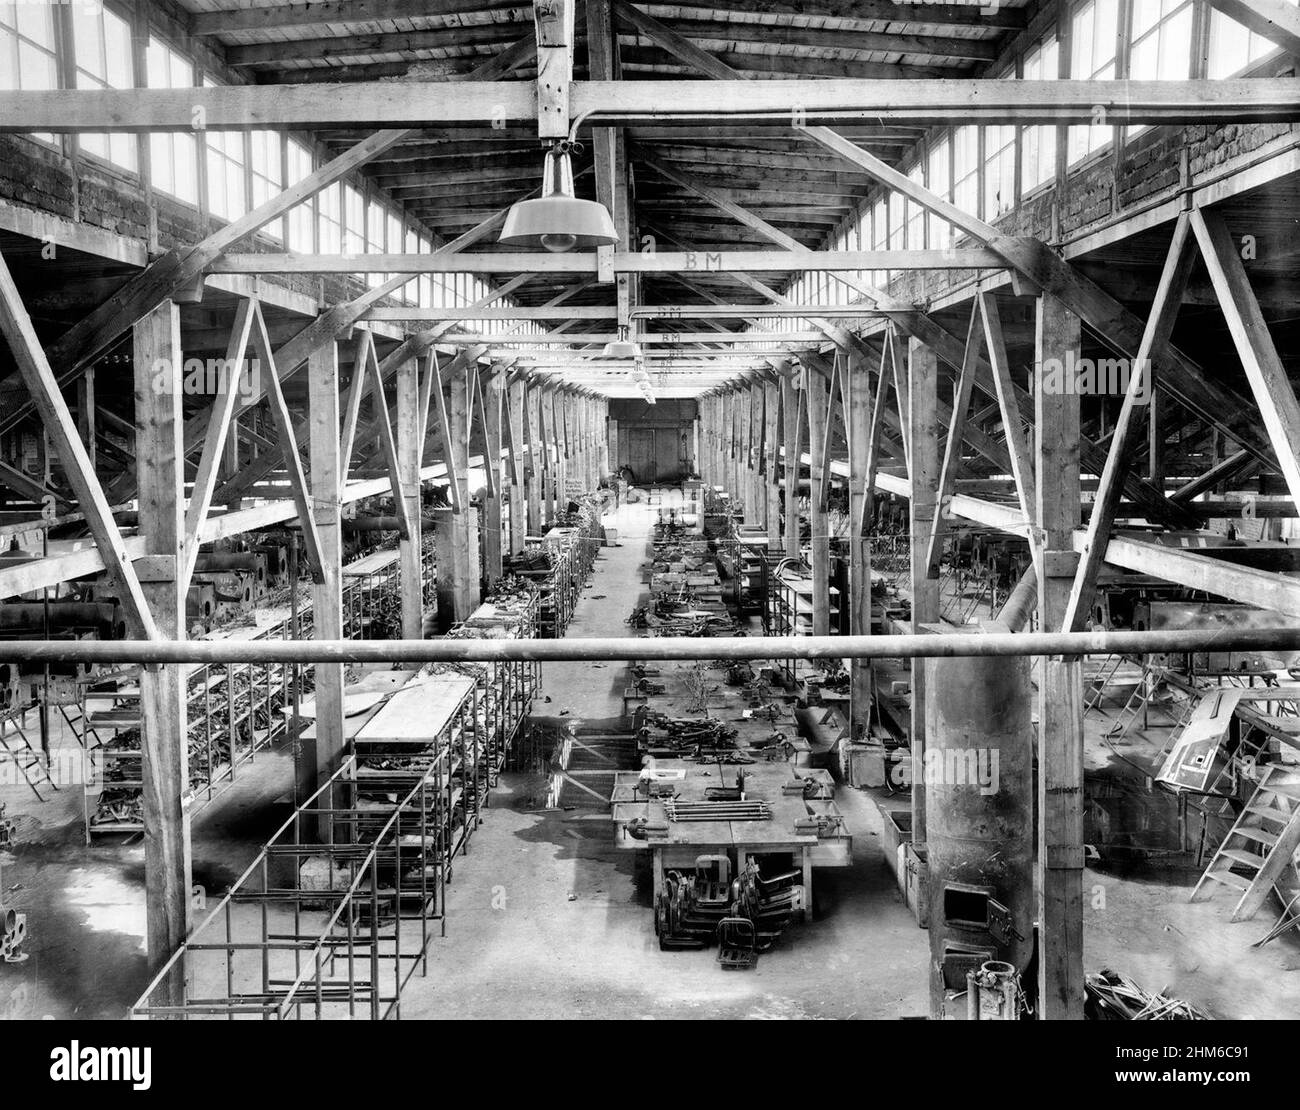 L'usine d'avions abandonné à Flossenburg, photographiée par le corps des transmissions de l'armée américaine après la libération du camp.Vraisemblablement celui exploité par Messerschmitt au camp depuis 1943, l'usine employait 5 700 travailleurs à la mi-1944 Banque D'Images